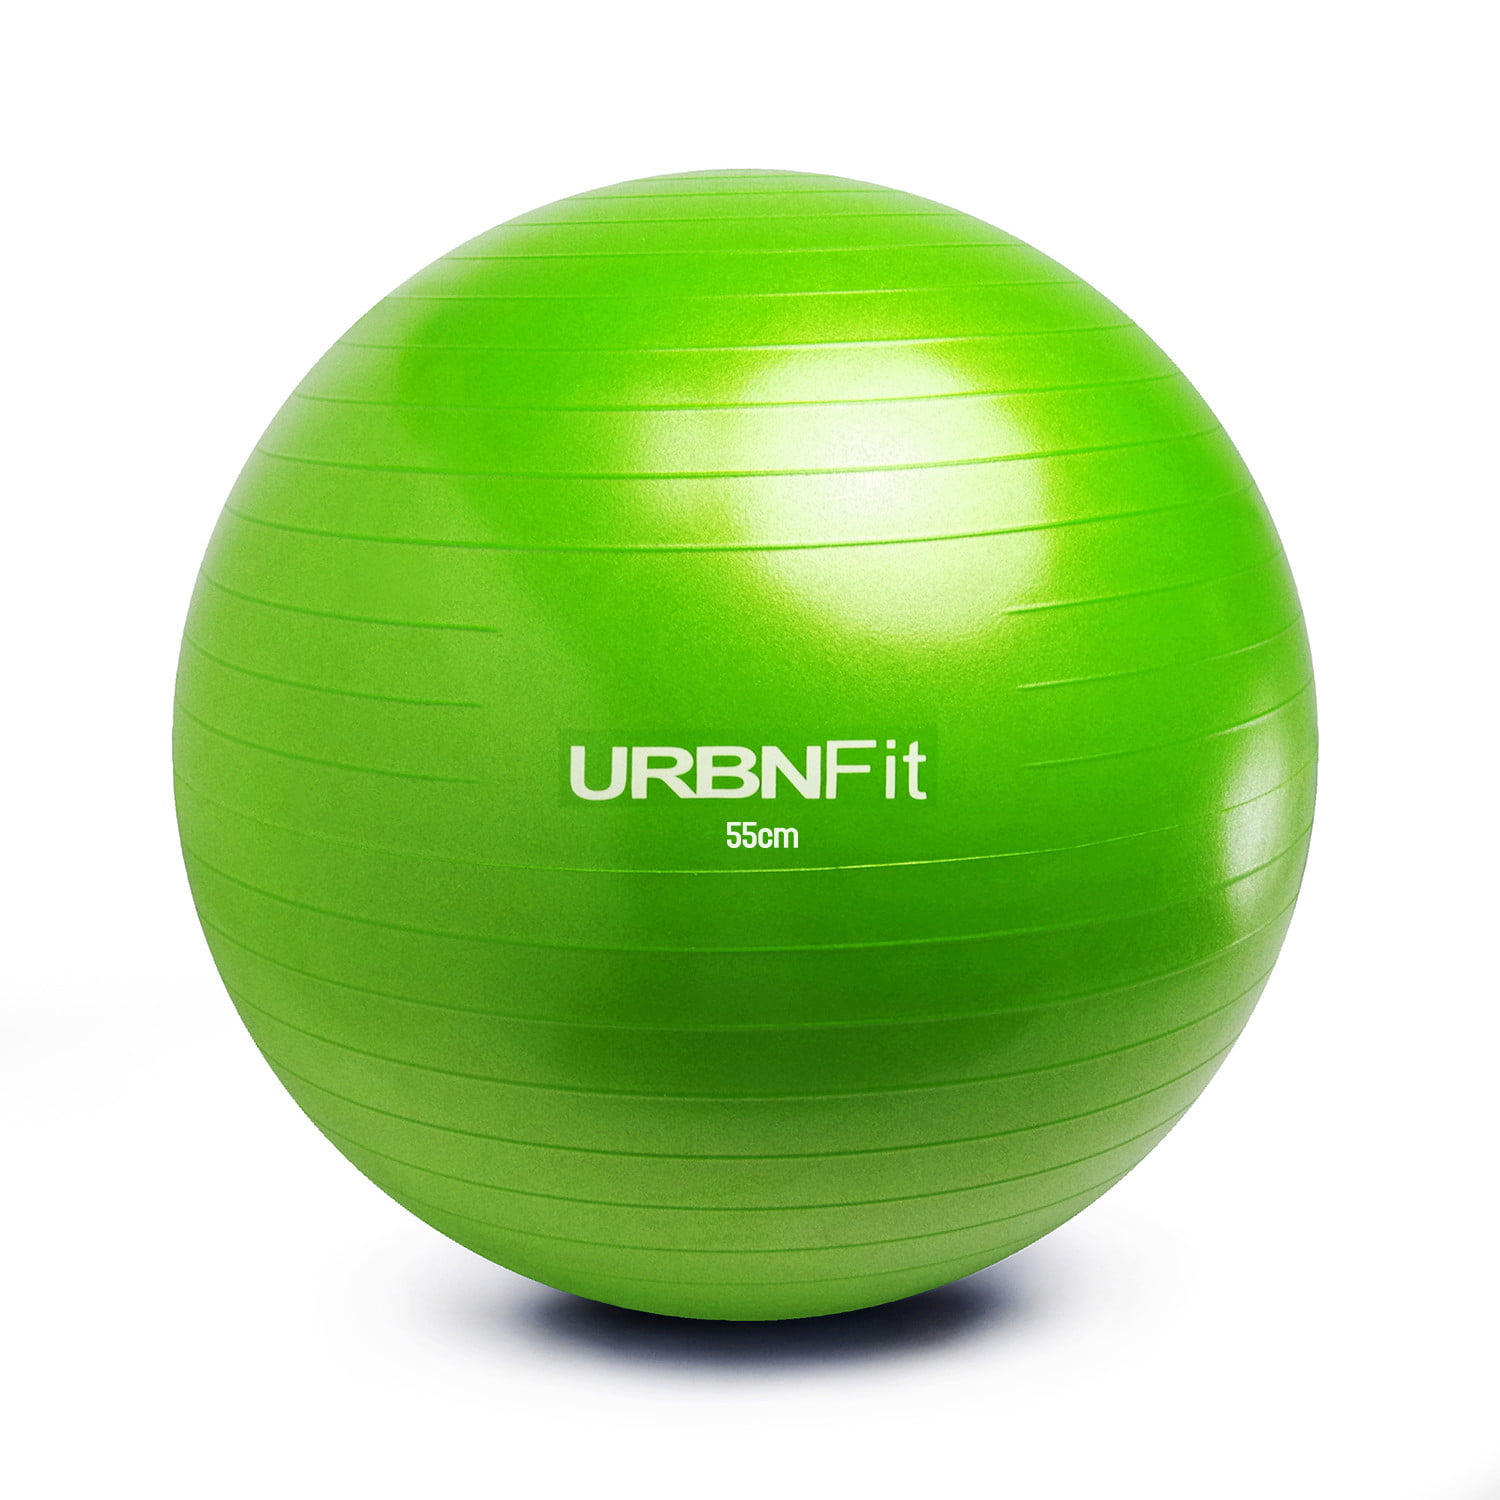 Varie Misure e Colori Pink URBNFit Exercise Gym Ball per stabilità e Yoga – Workout Guide Included /& Quick Pompa Inclusa – Anti Scoppio qualità Professionale Design